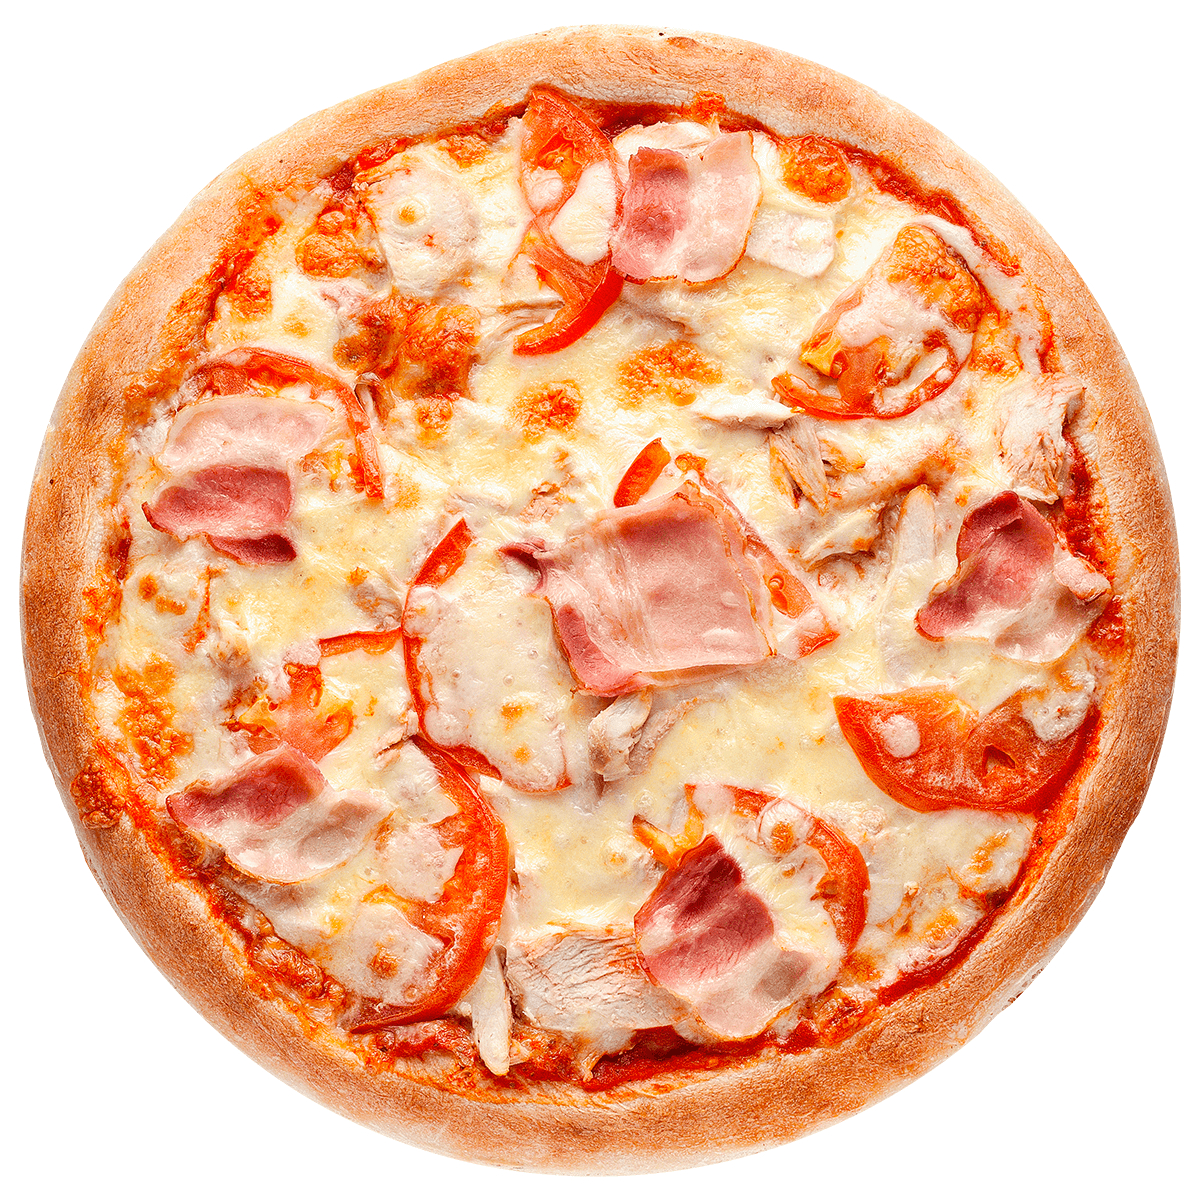 лучшая пицца с доставкой в красноярске рейтинг фото 70